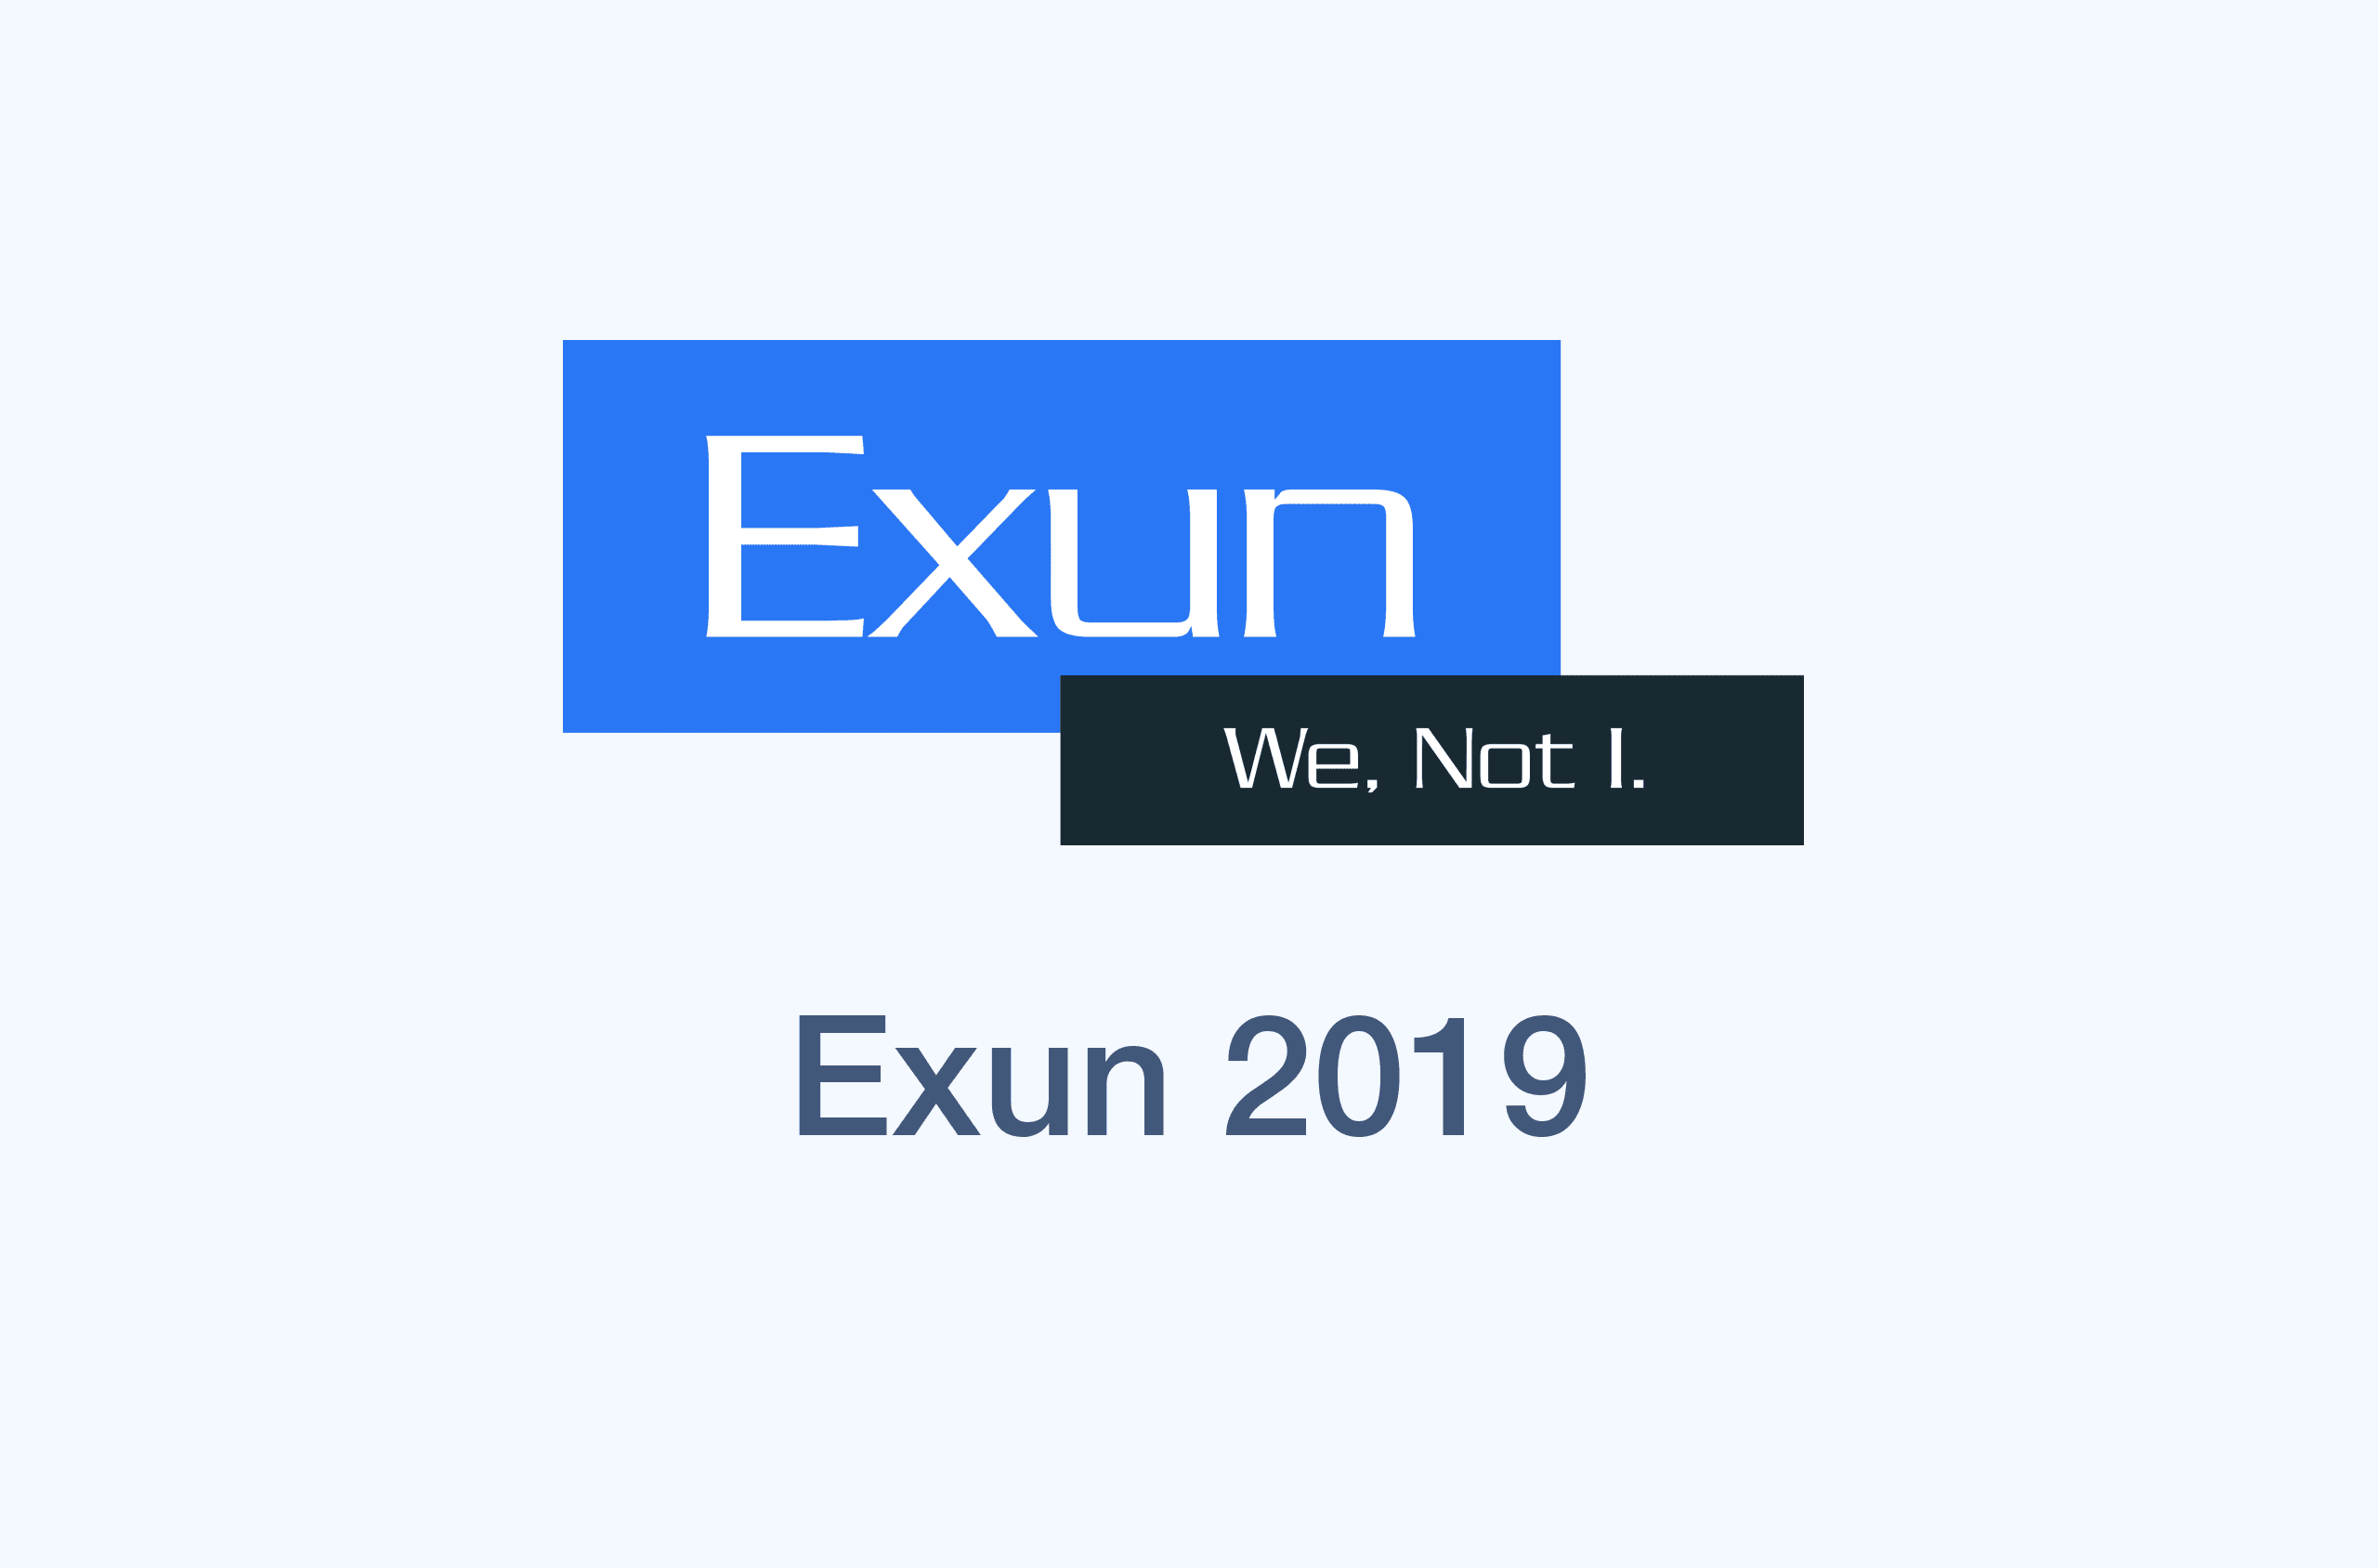 Exun 2019's image